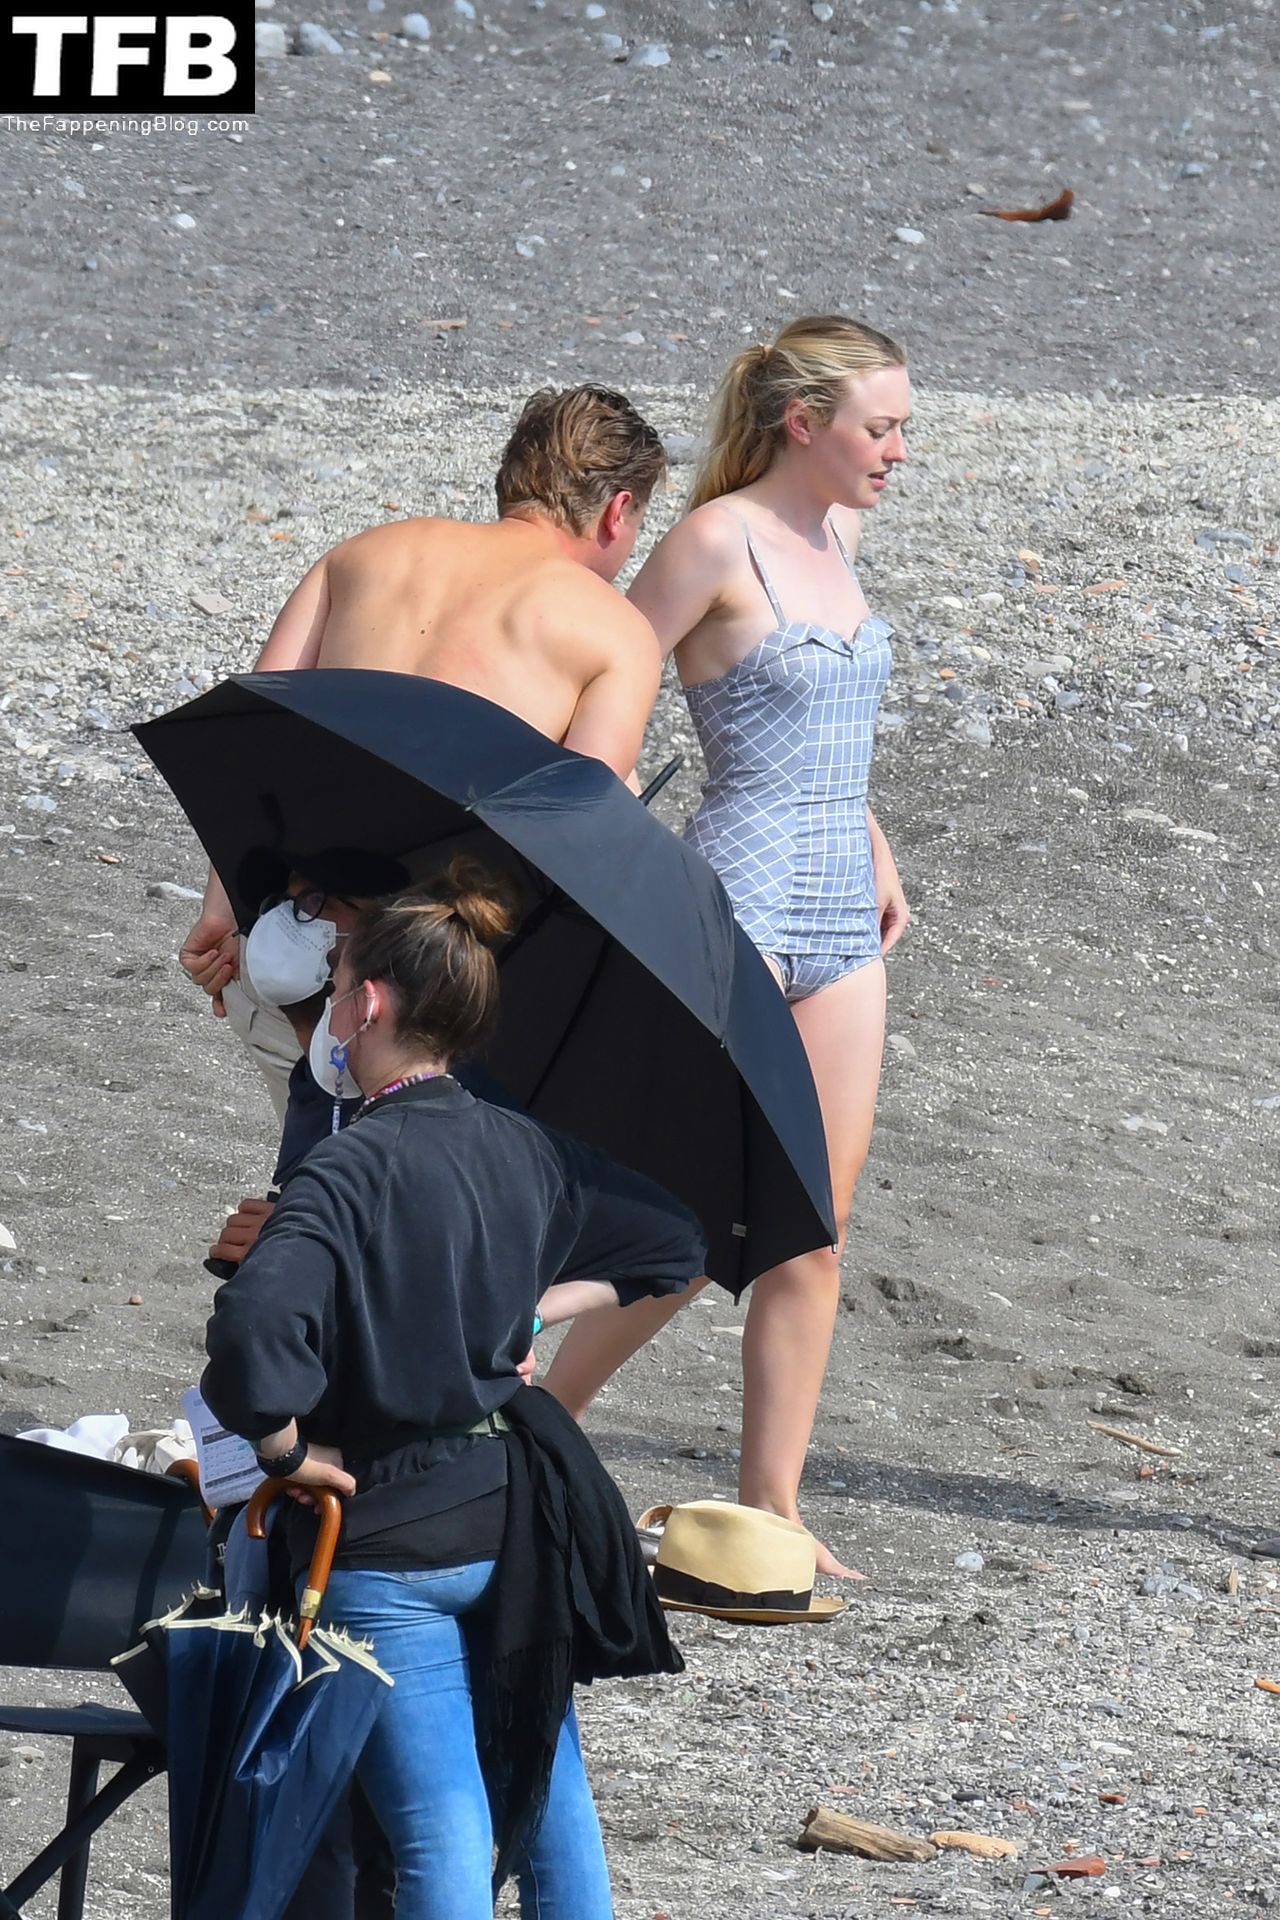 Dakota Fanning Look Cute in a Swimsuit Filming Ripley in Strani (48 Photos)